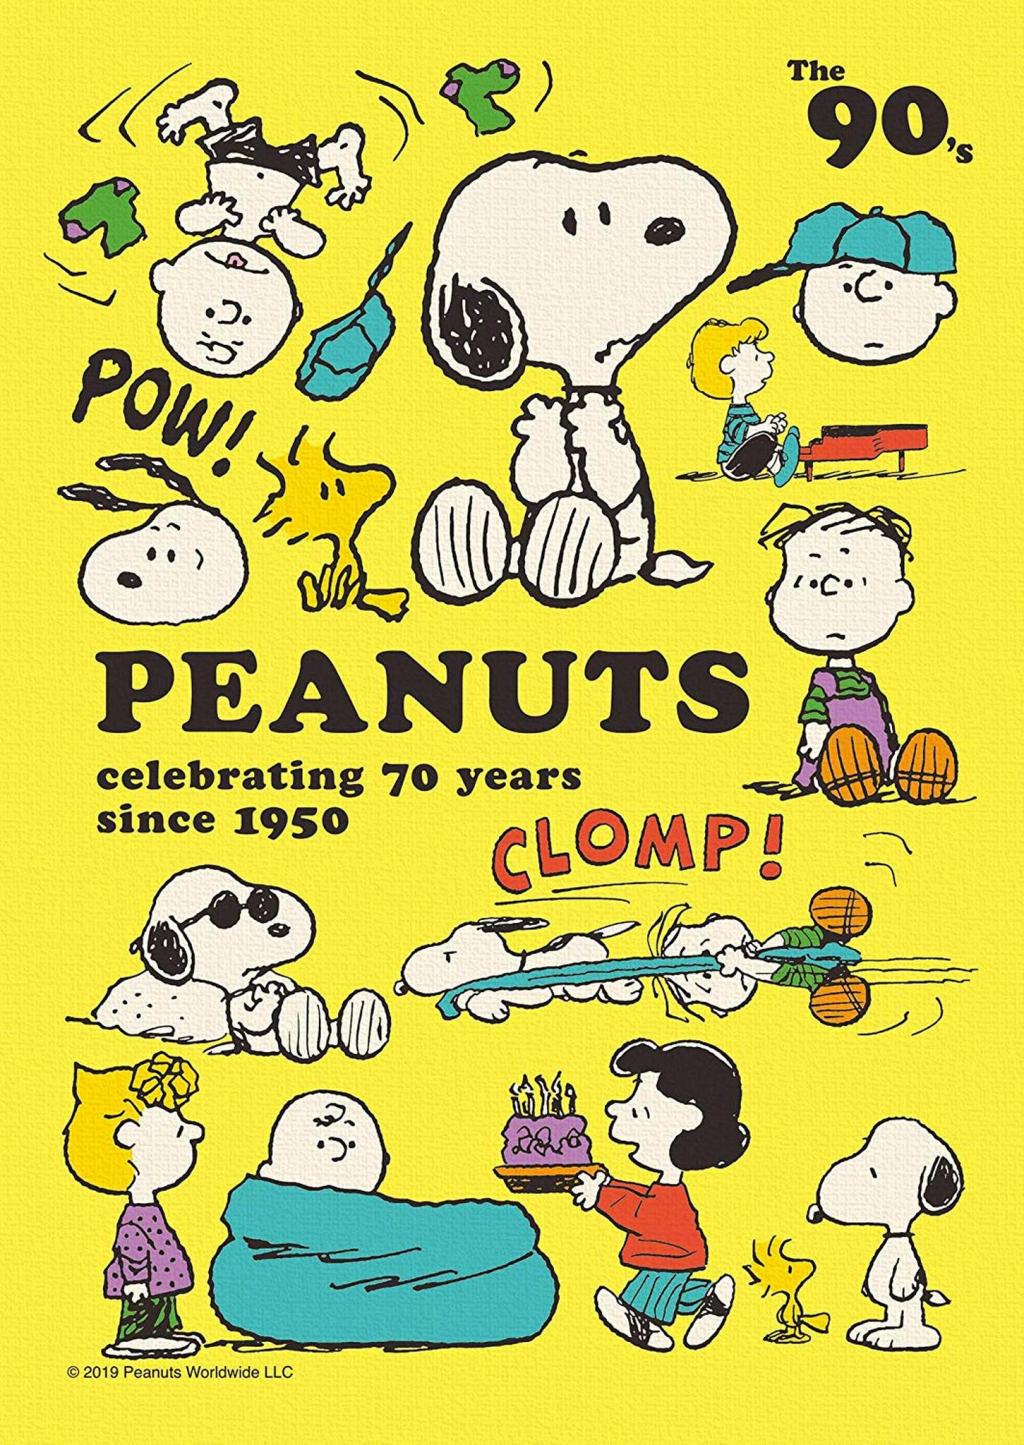 Sự thật thú vị về 'Peanuts' - câu chuyện của Charlie Brown và chú chó Snoopy